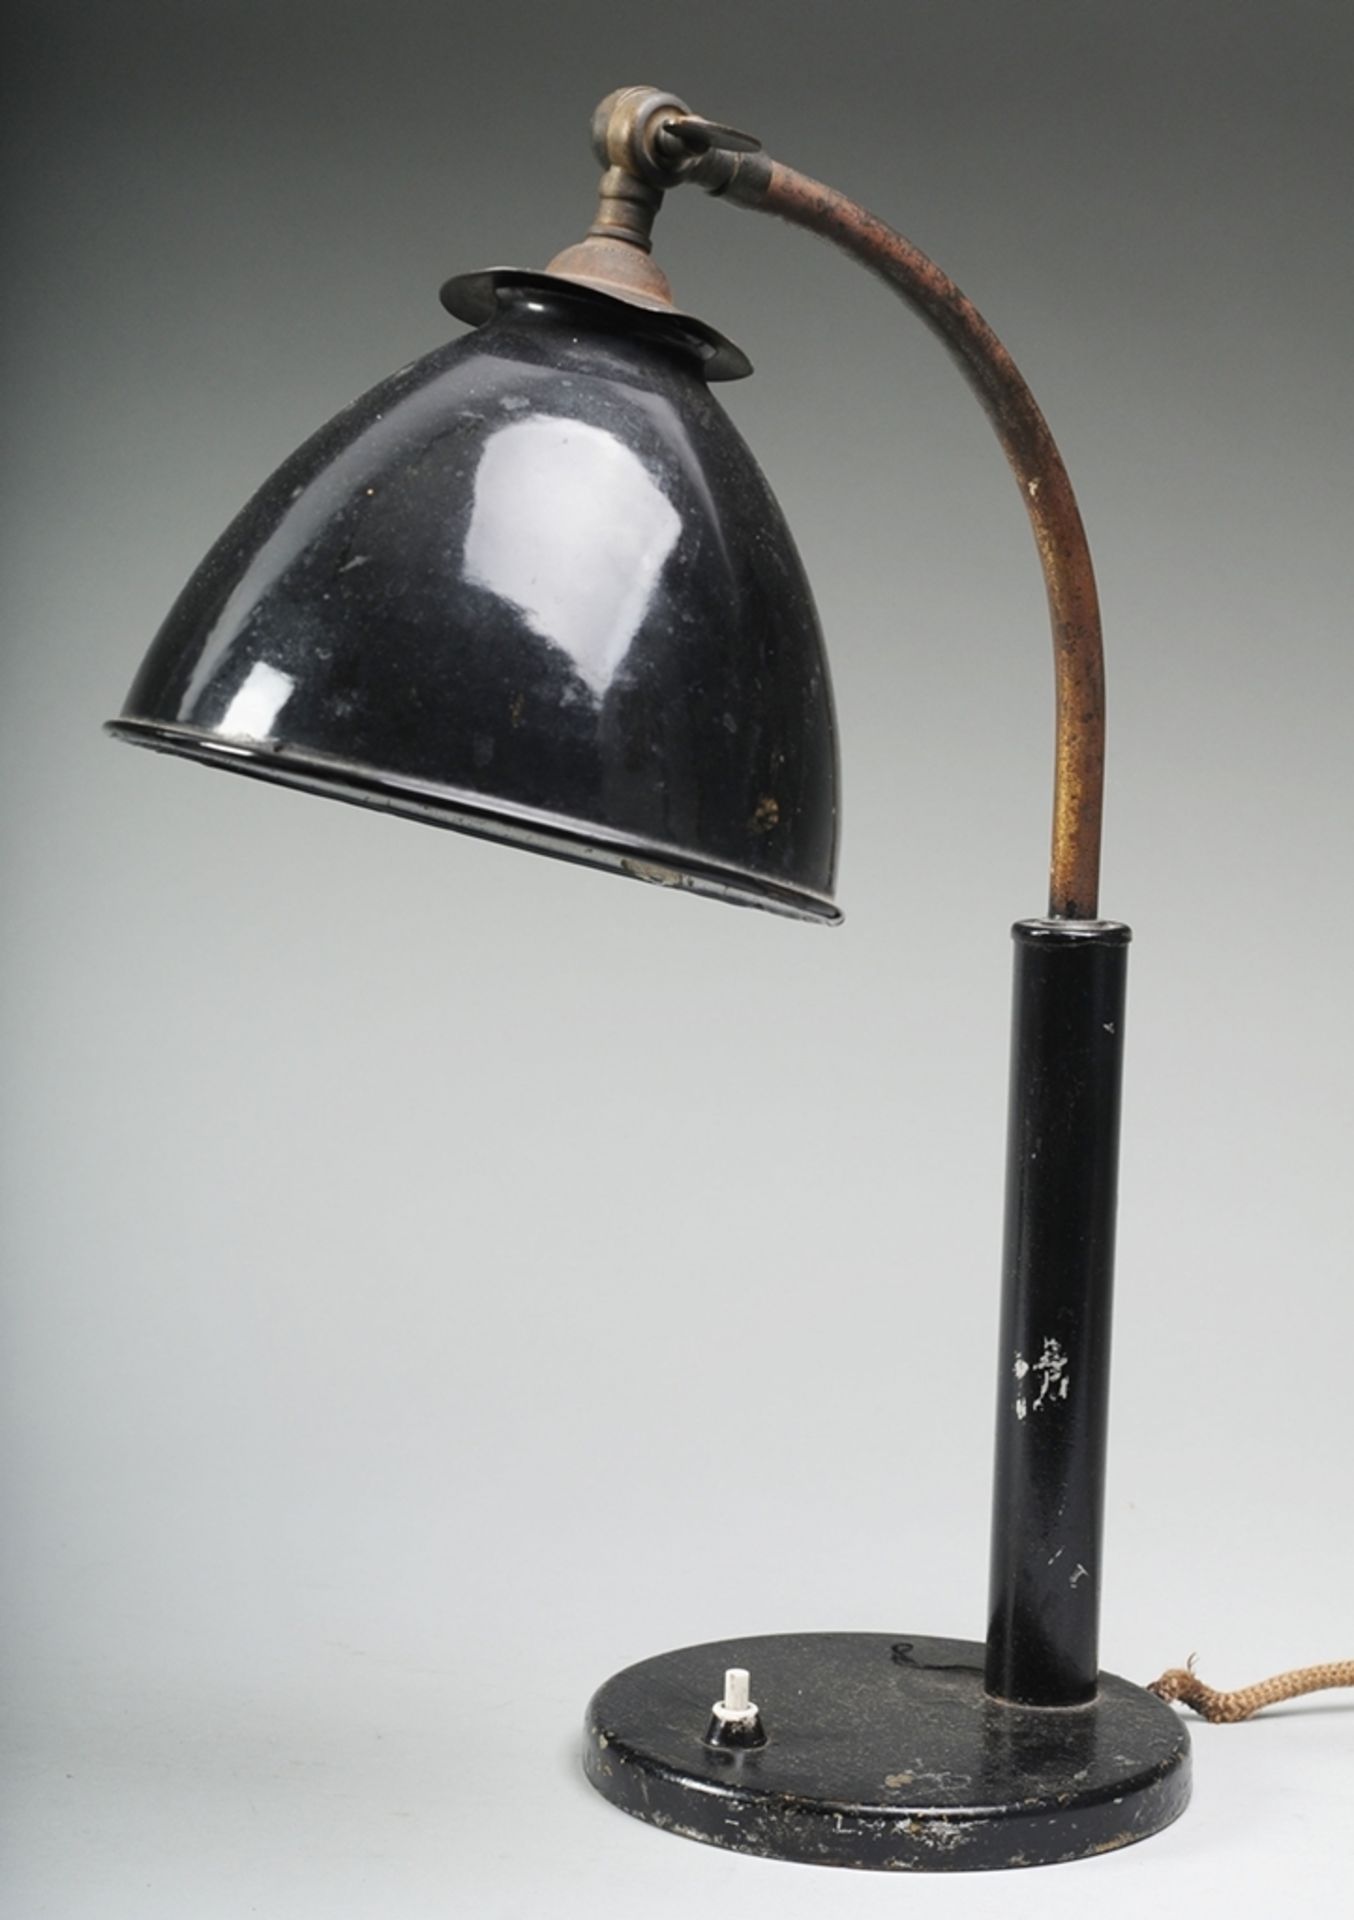 Schreibtischlampe "Zenith"1-flg. Stahl, schwarz lackiert. Flacher Rundfuß mit Druckschalter. Bogenfö